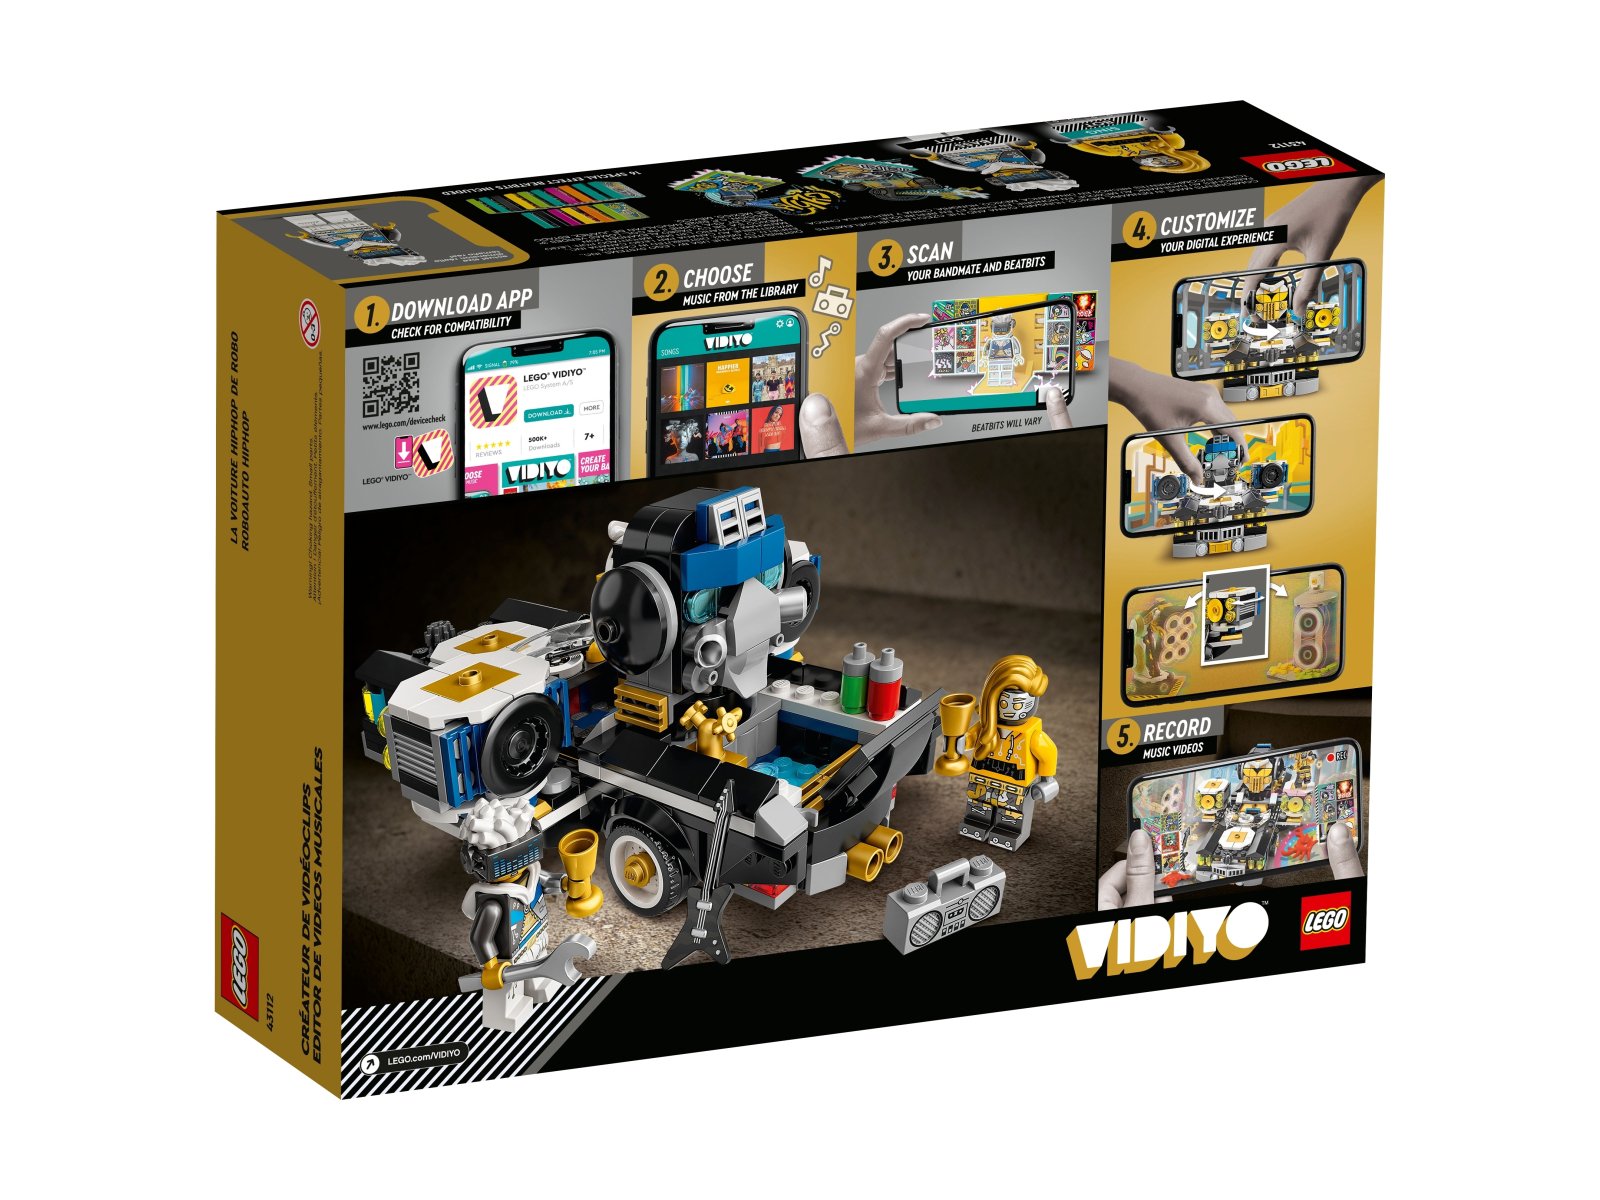 LEGO VIDIYO Robo HipHop Car 43112